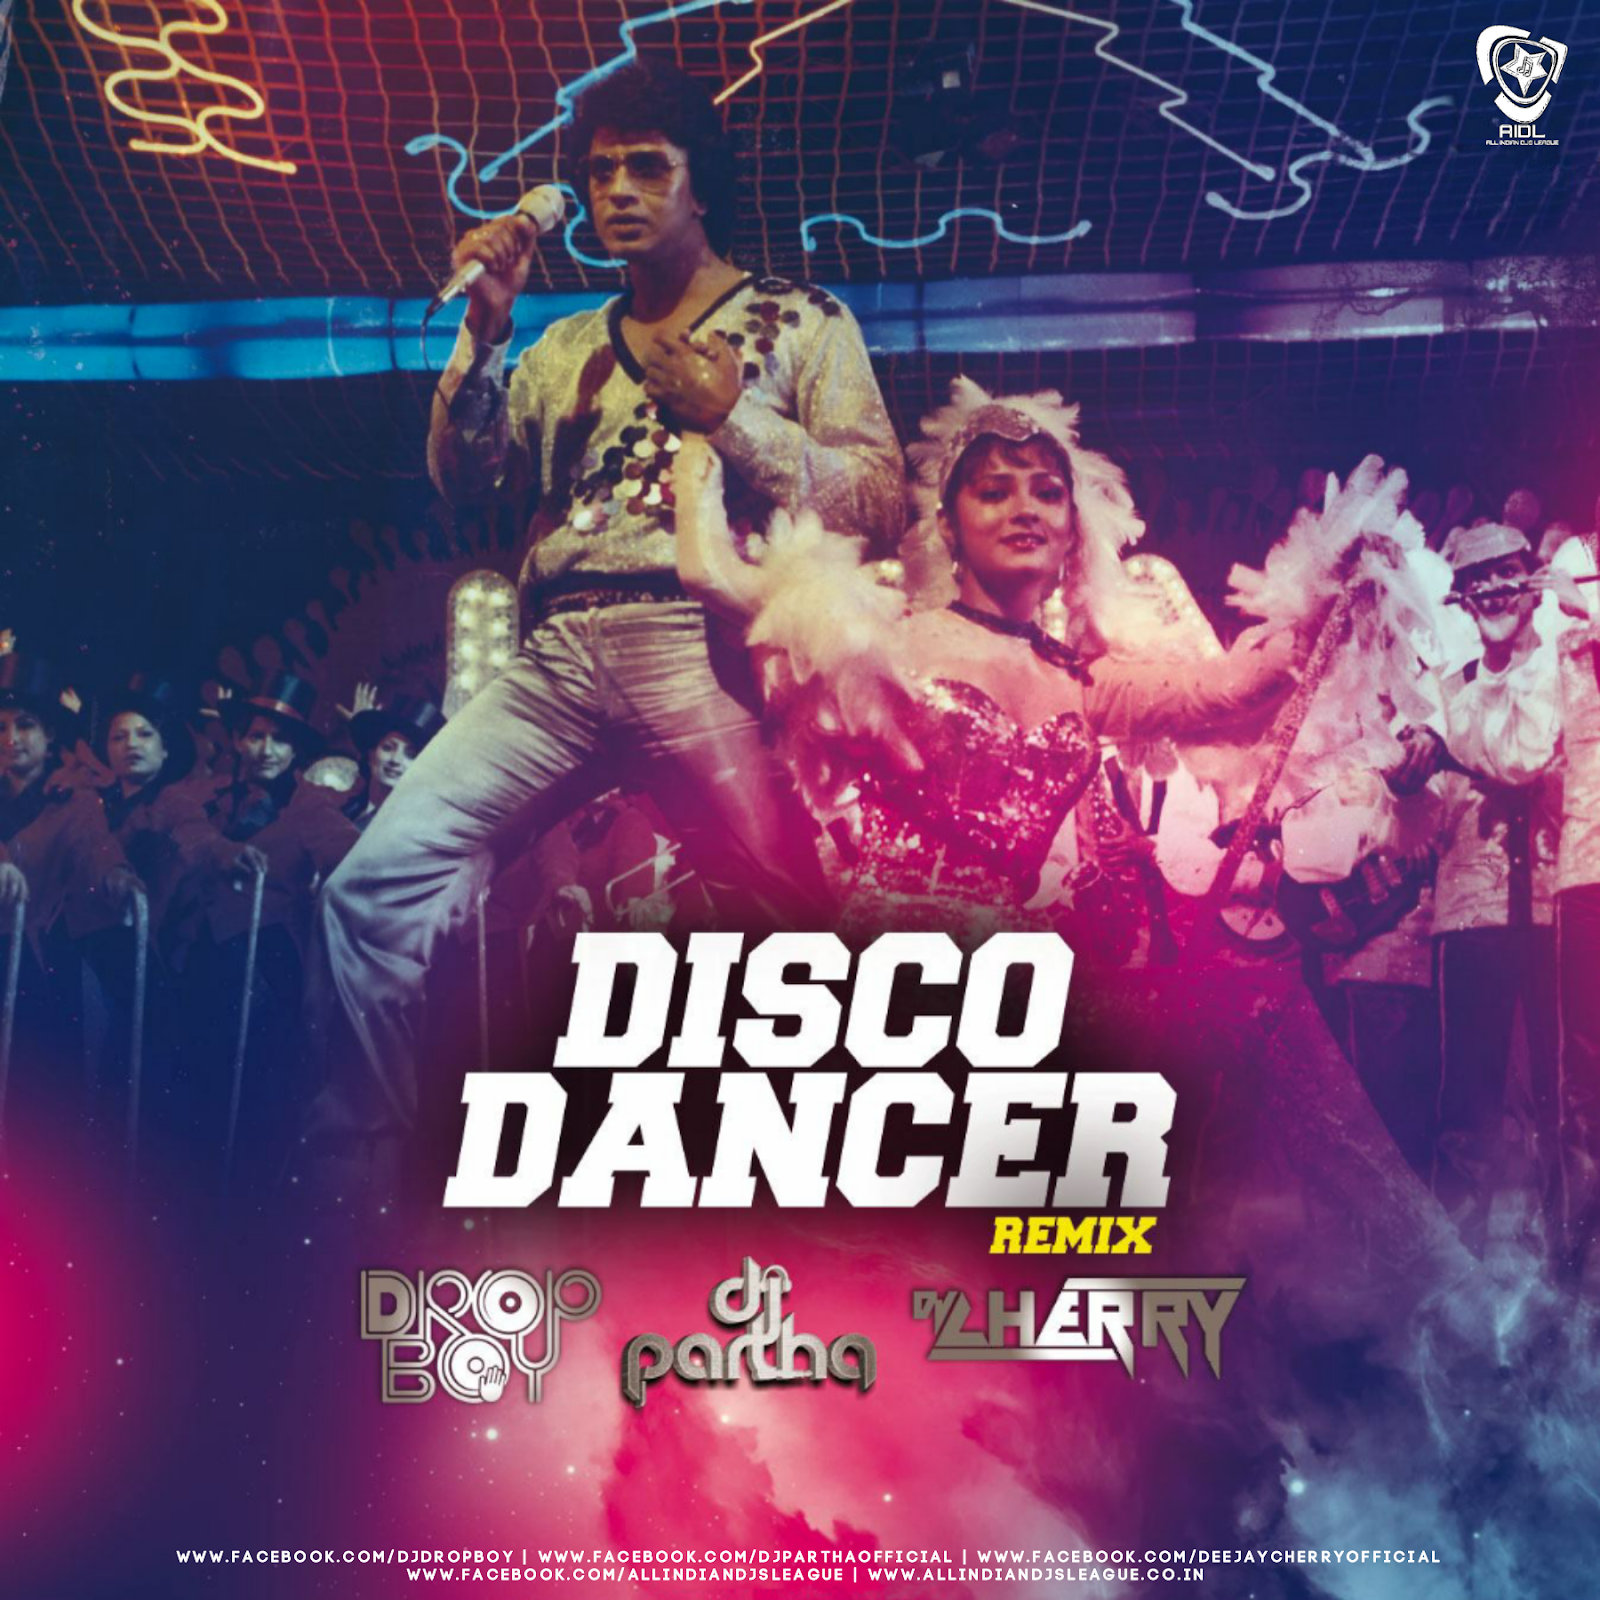 Танцор диско. Диско денсер. «Танцор диско» / Disco Dancer. Танцовщица диско. New dance remix